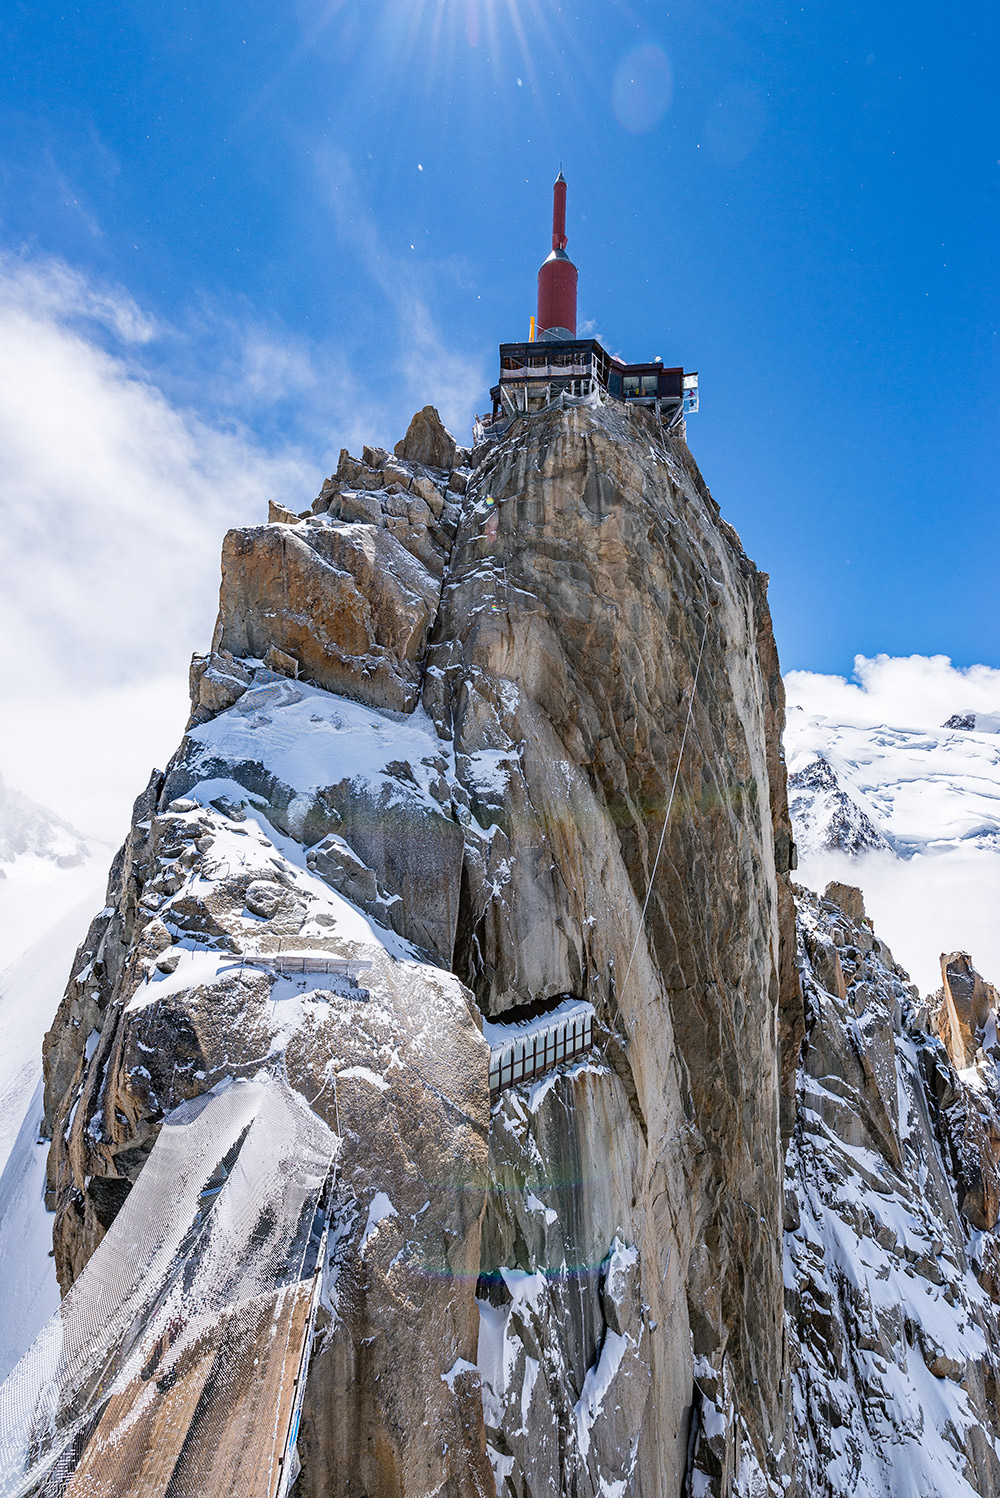 Jack Taylor, Mont Blanc Circuit 'Tour du Mont Blanc' trip